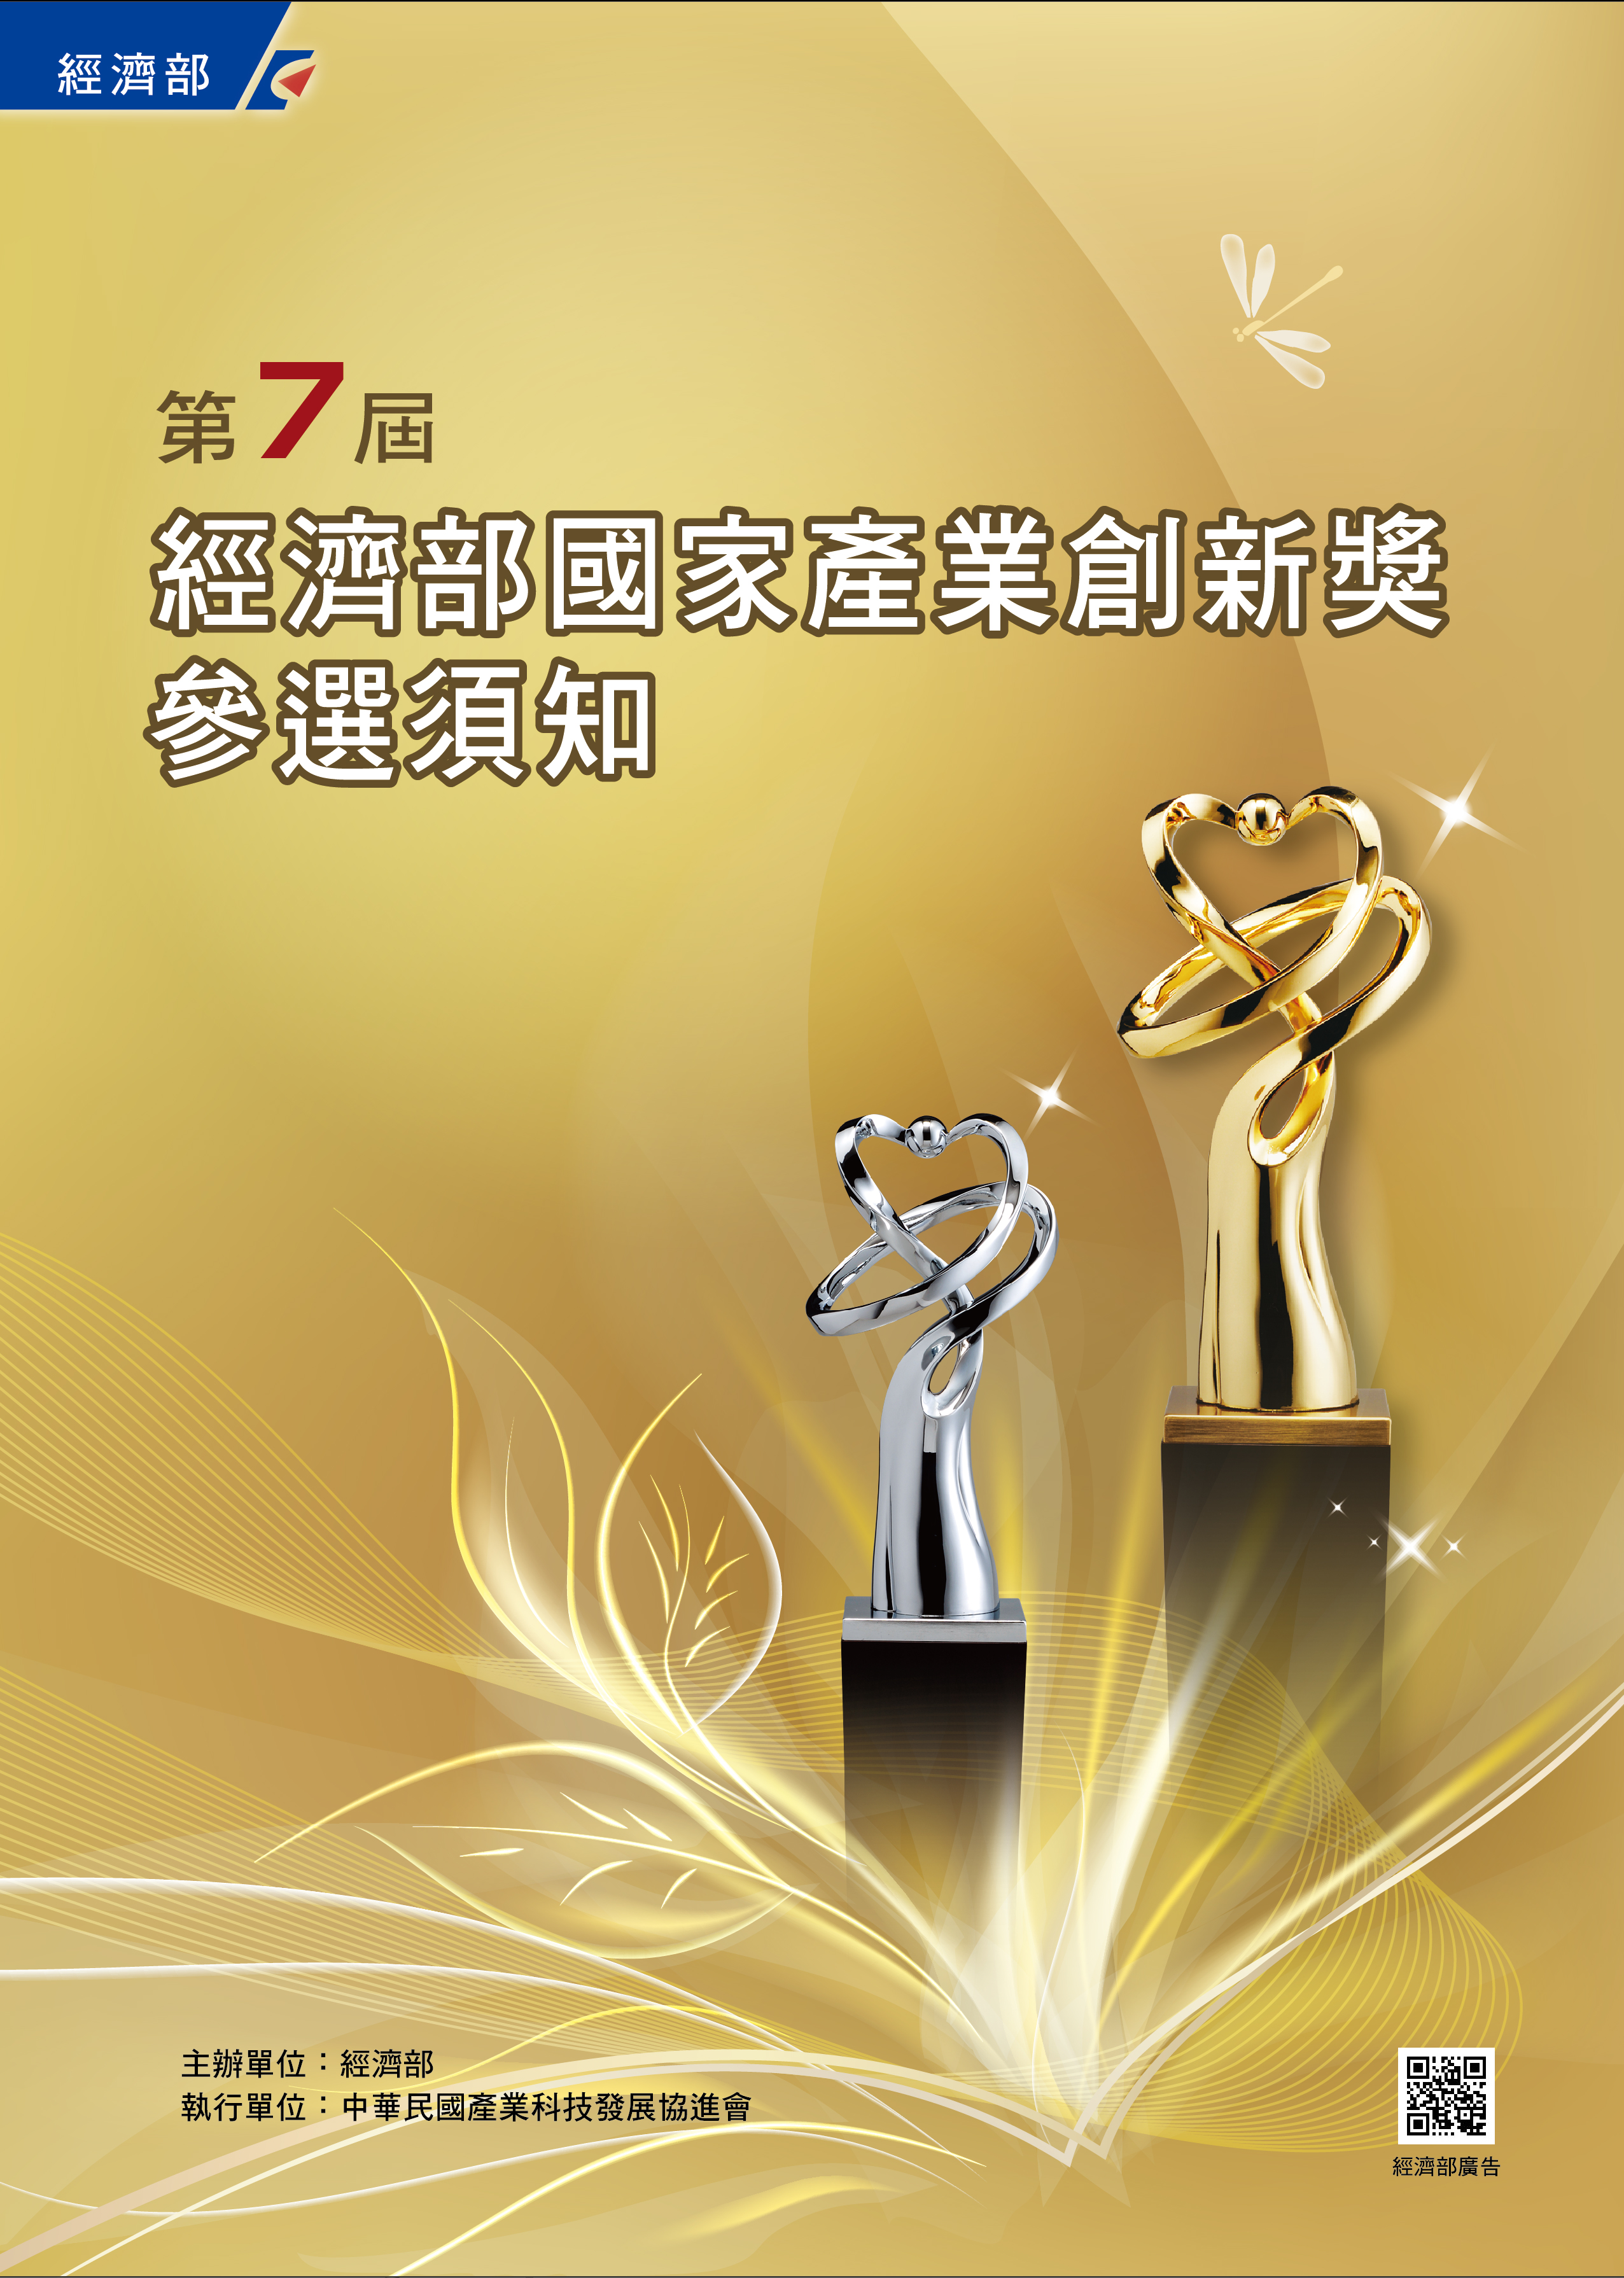 第7屆經濟部國家產業創新獎參選須知